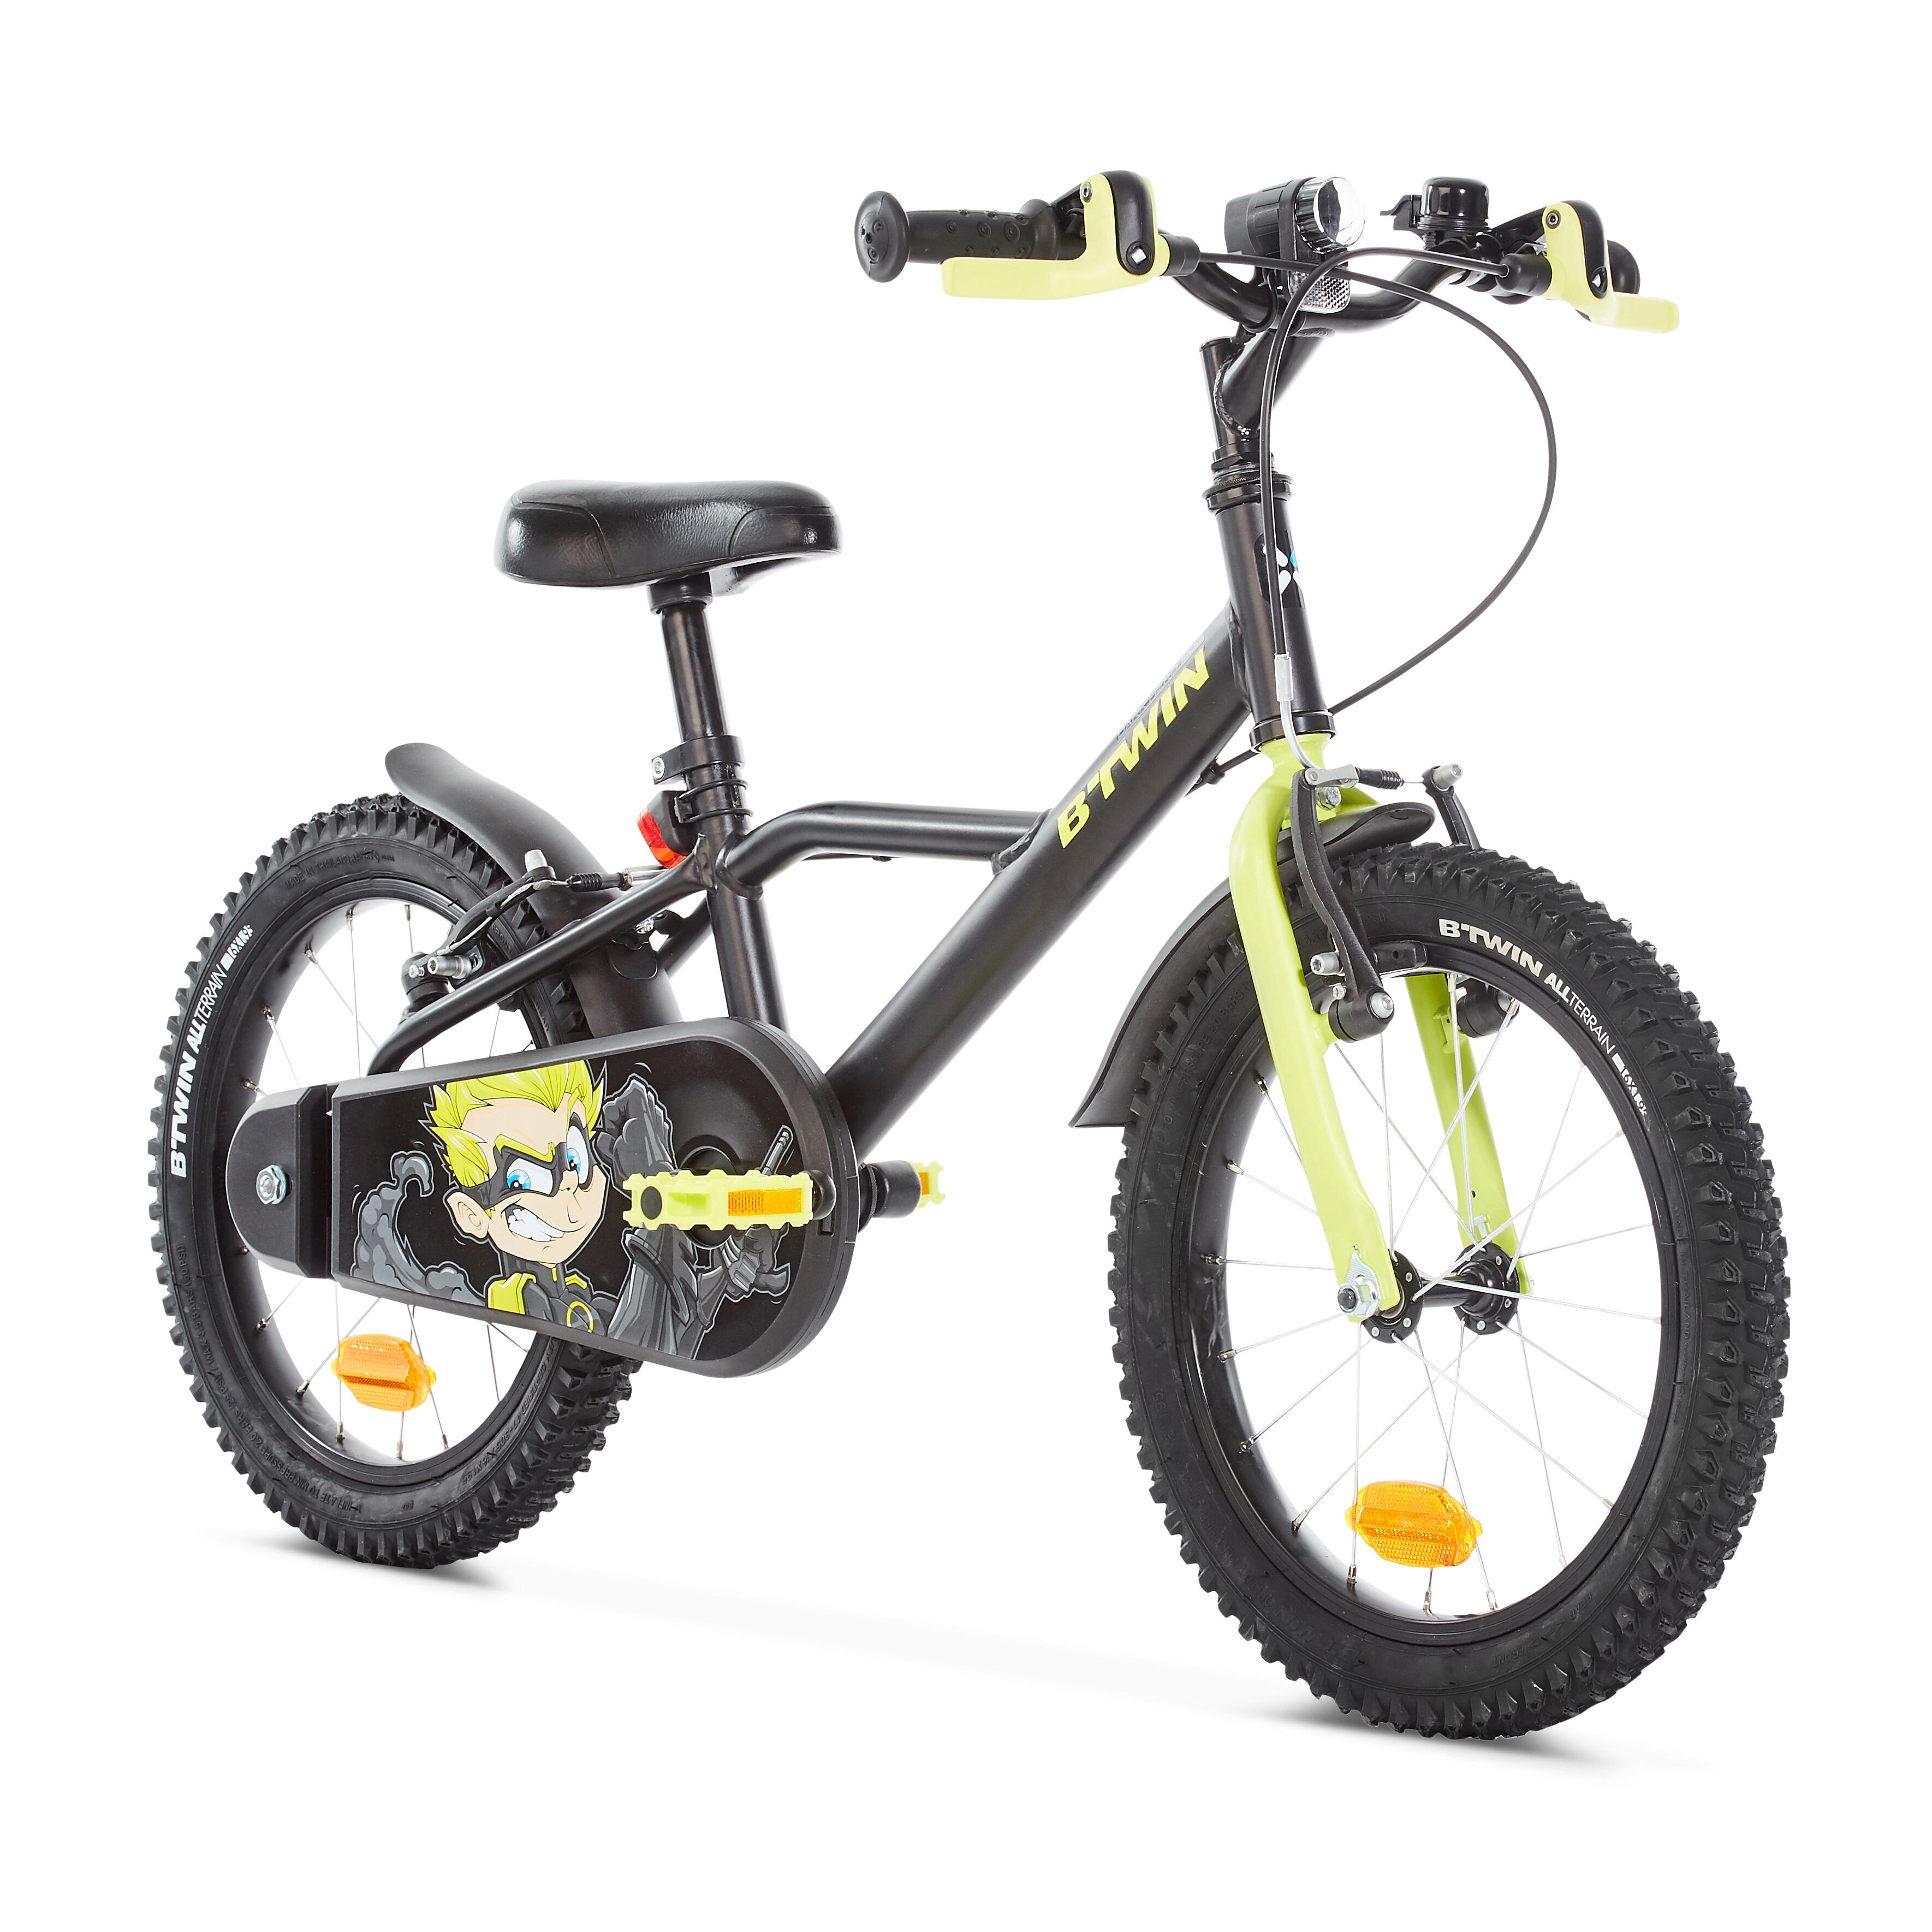 Какой велосипед купить ребенку 7 лет. Btwin 16 велосипед детский. Детский велосипед от 4 до 6 лет прогулочный 16" heroboy 500 Btwin. Велосипед детский Декатлон b Twin. Детский велосипед b'Twin heroboy 500 16.